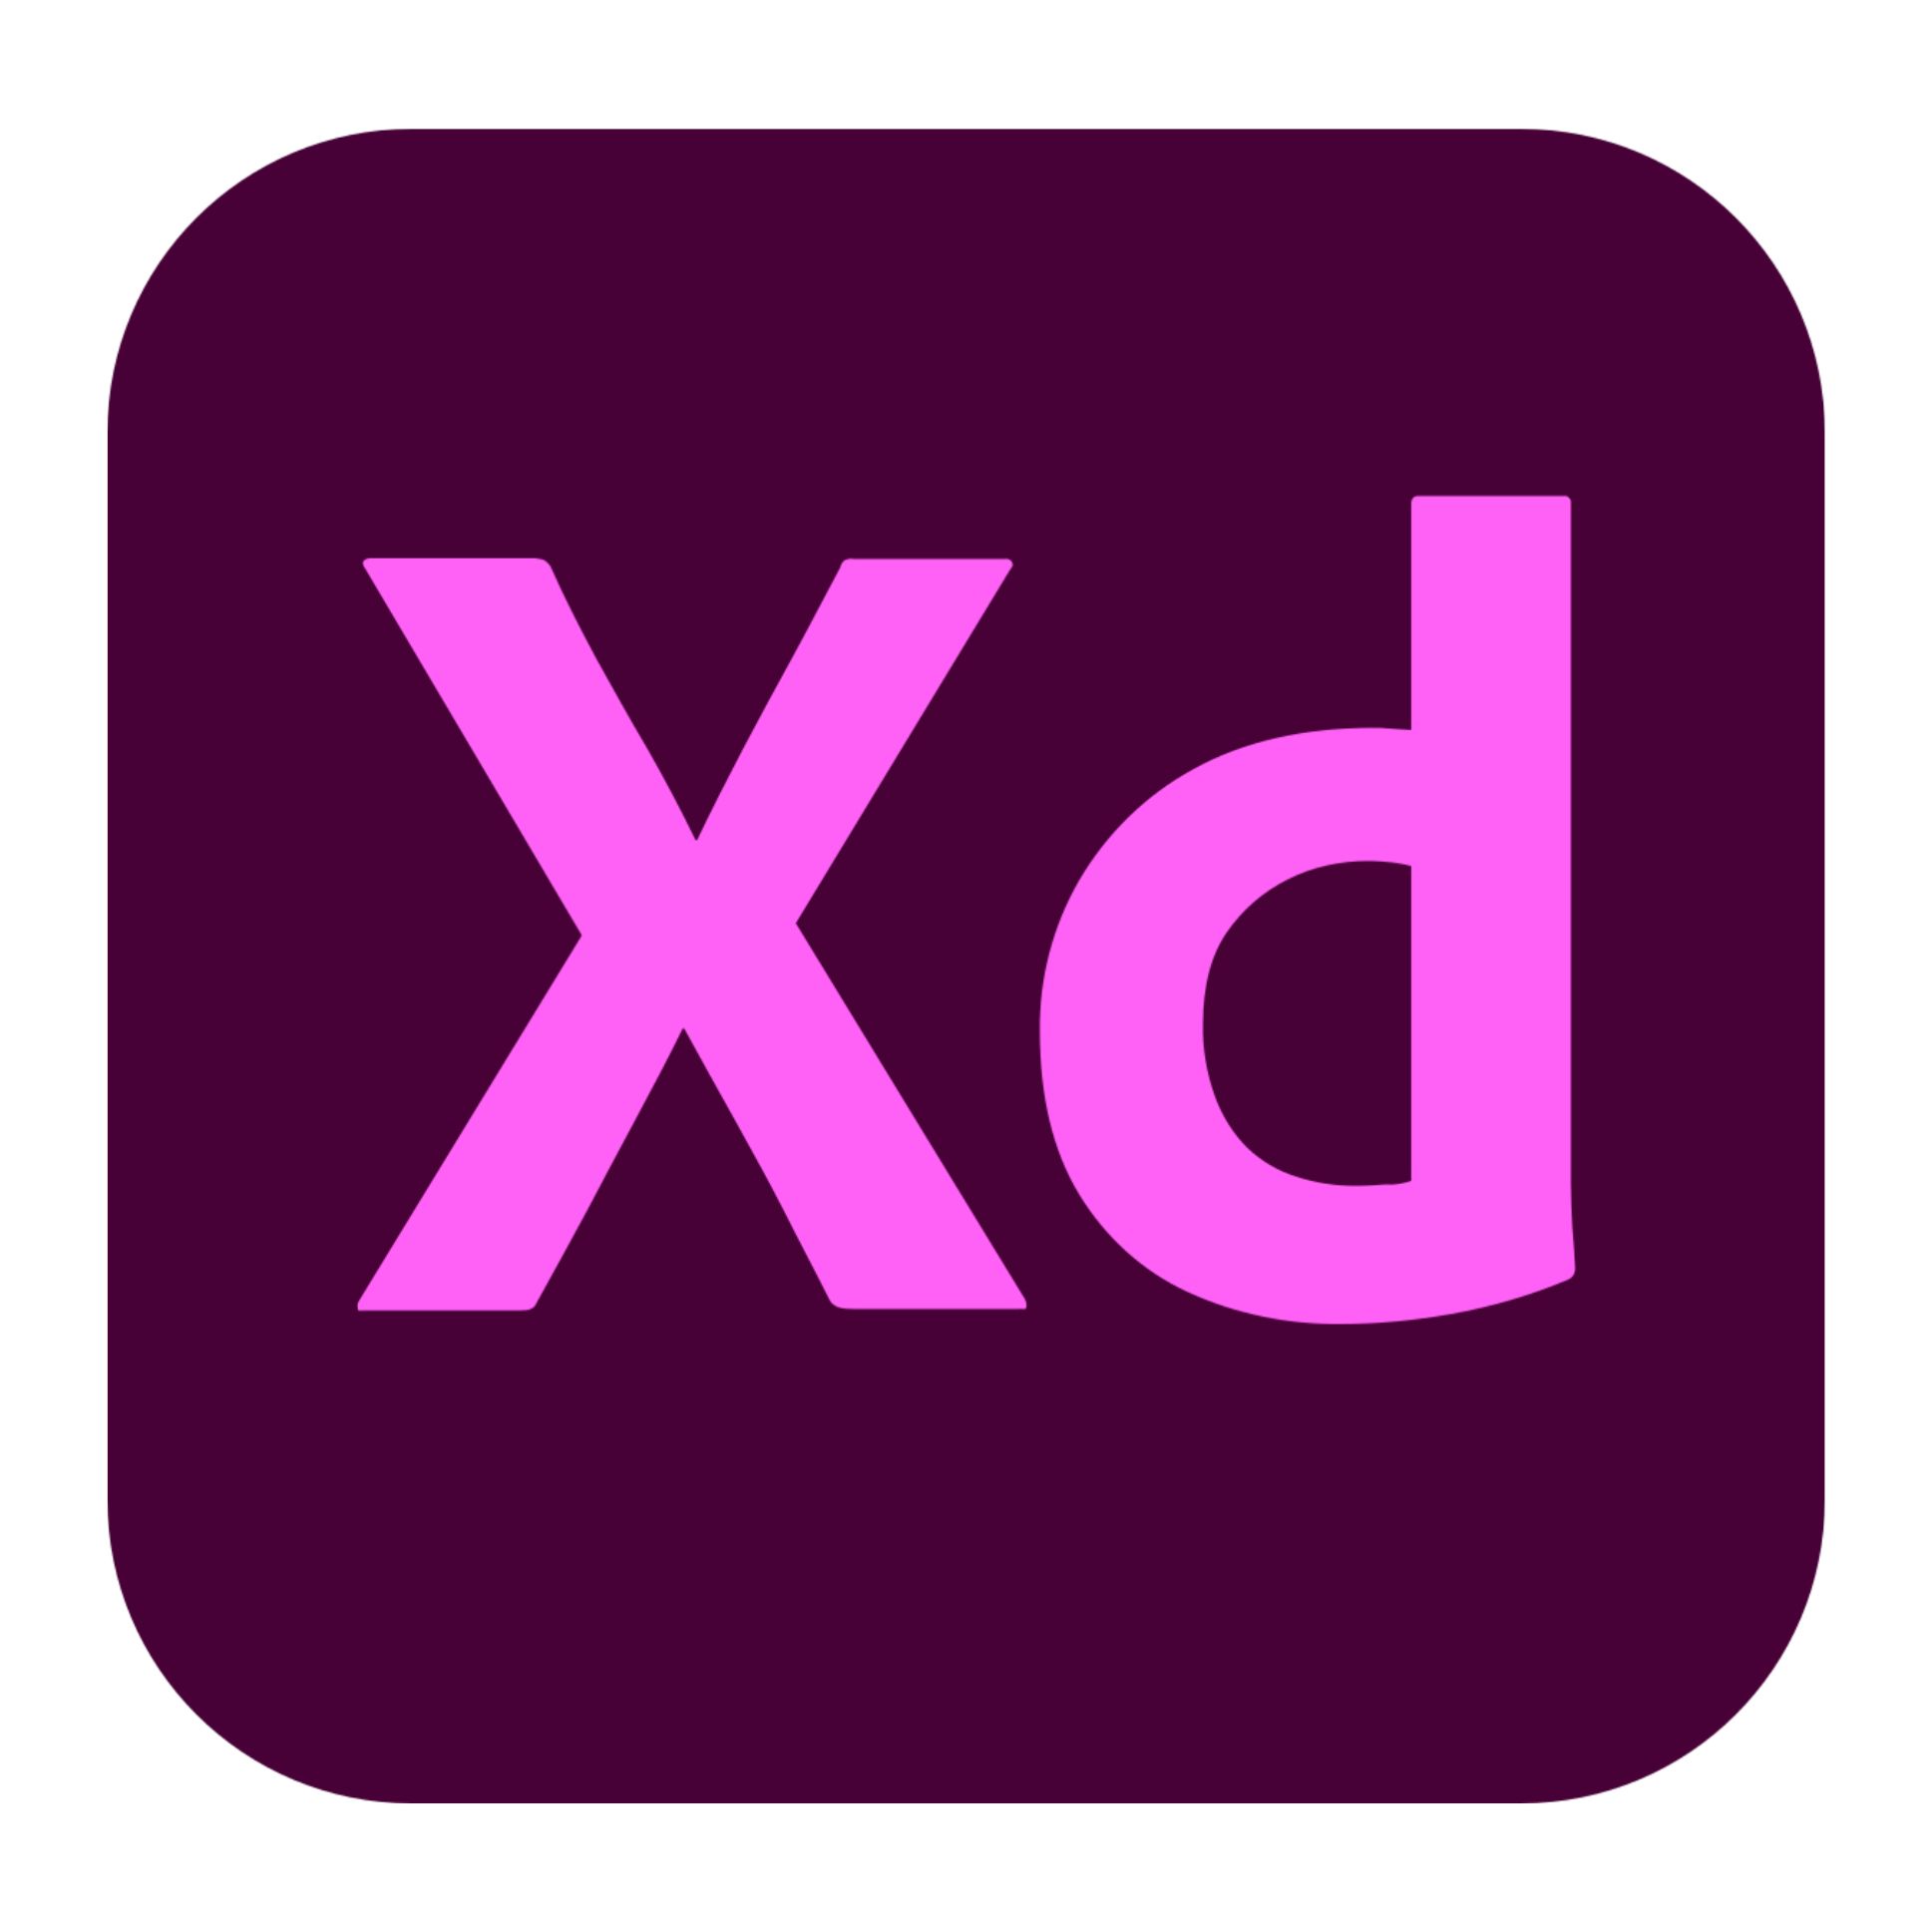 Adobe XD Image